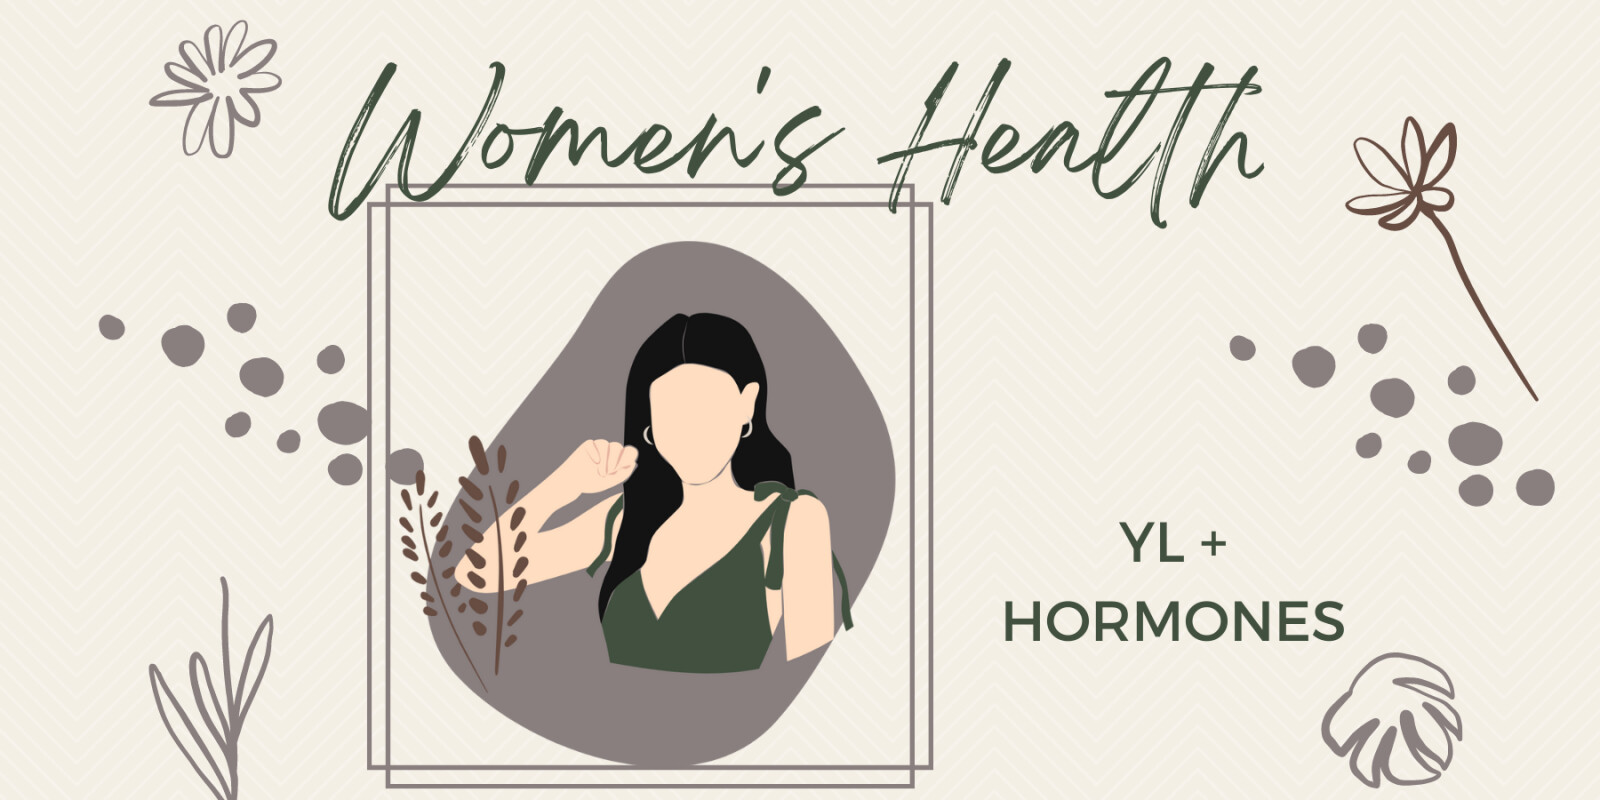 Women's Health YL + Hormones